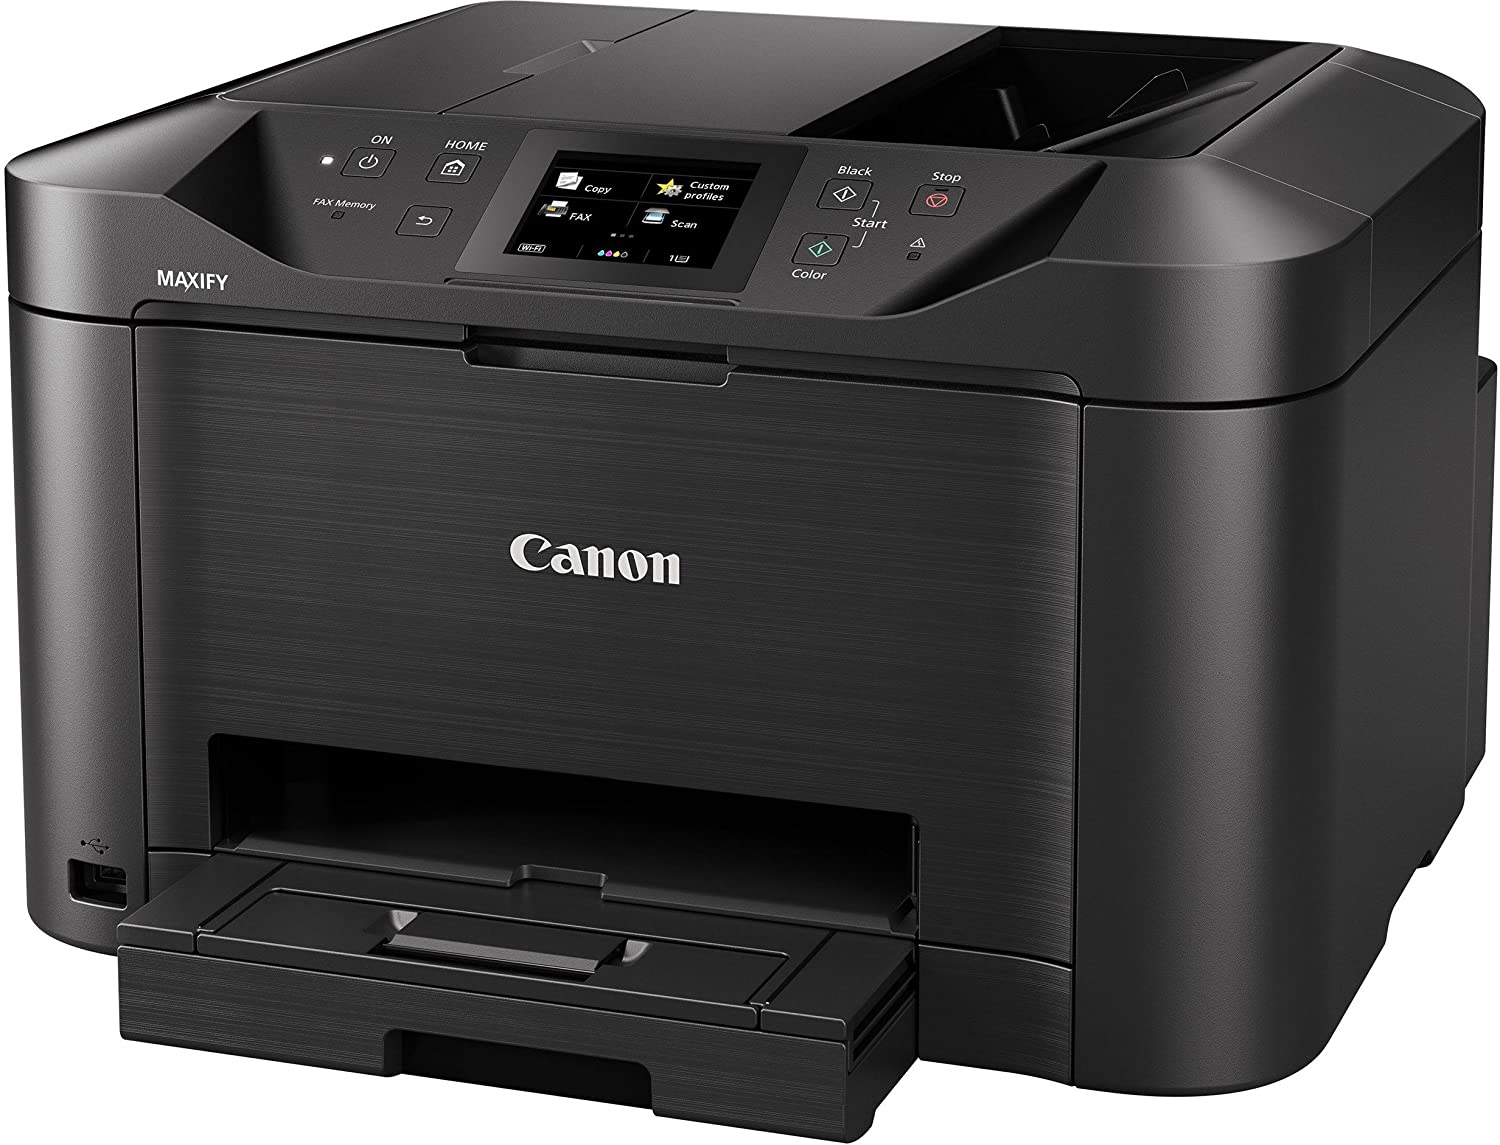 Canon Maxify MB5170 Inkjet Printer